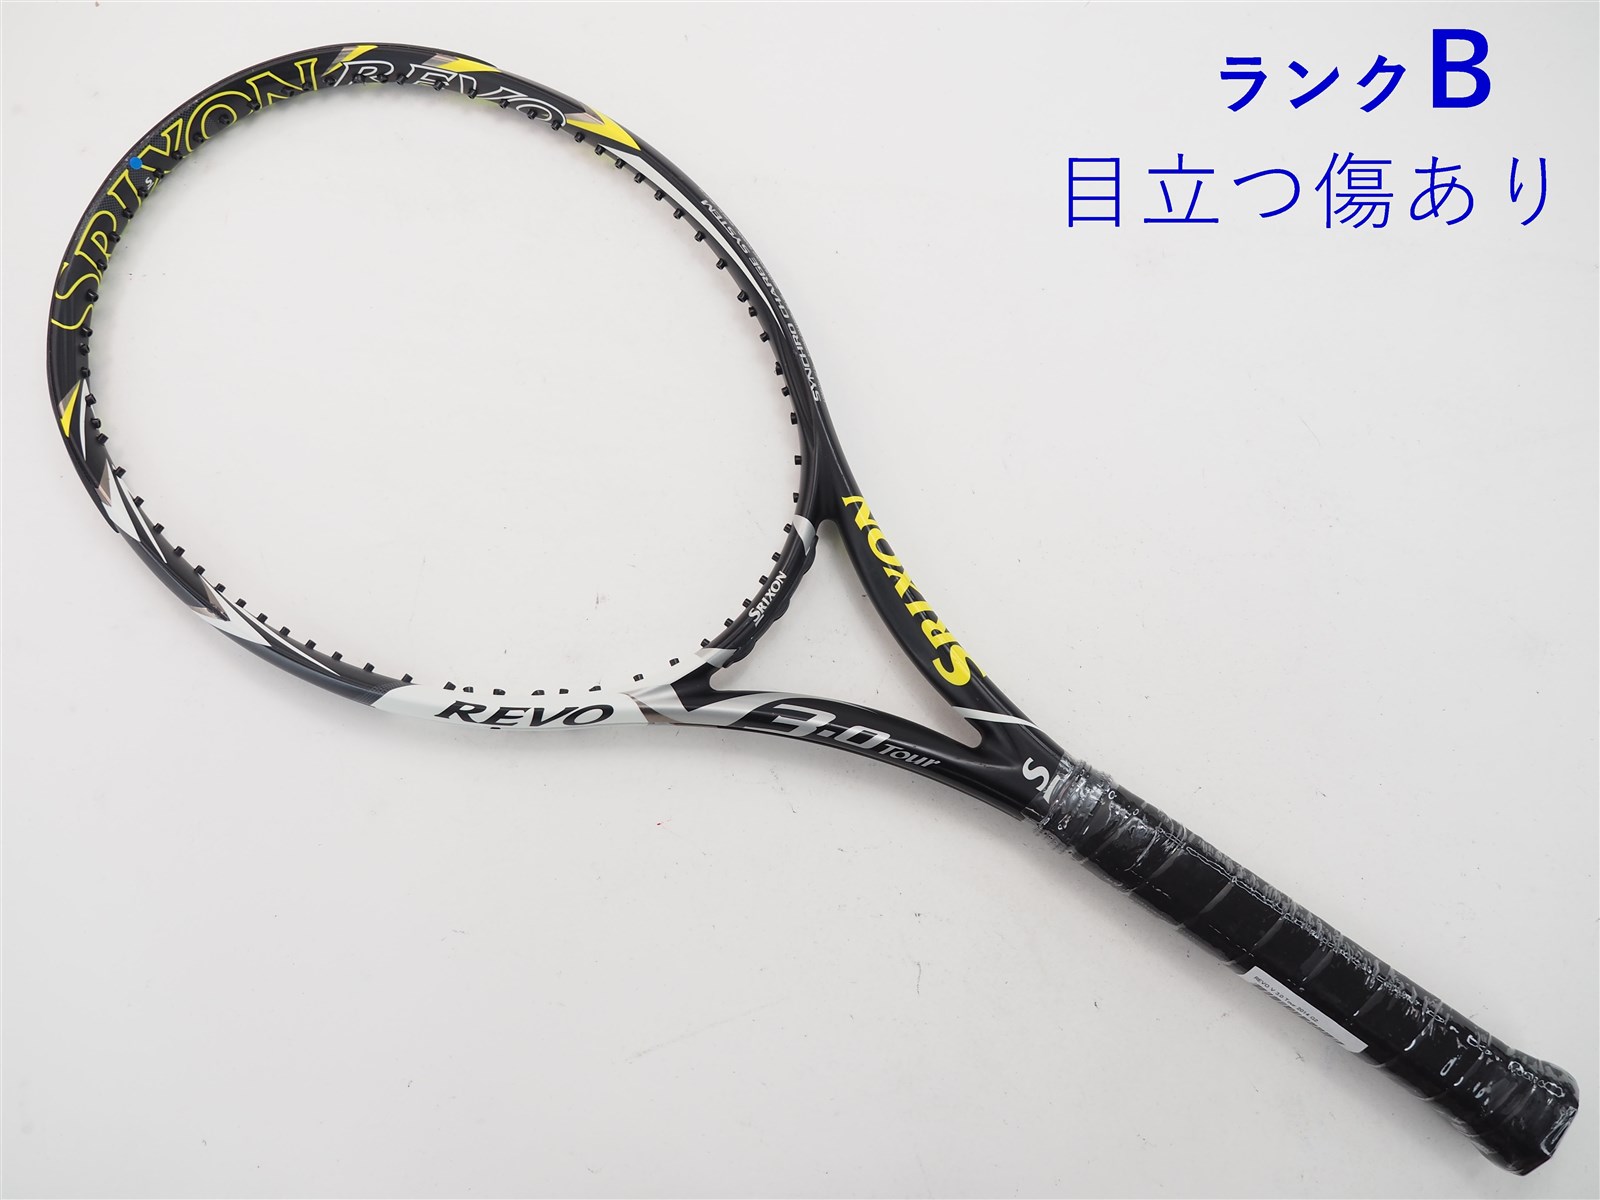 テニスラケット スリクソン レヴォ ブイ 3.0 ツアー 2014年モデル (G3)SRIXON REVO V 3.0 Tour 2014